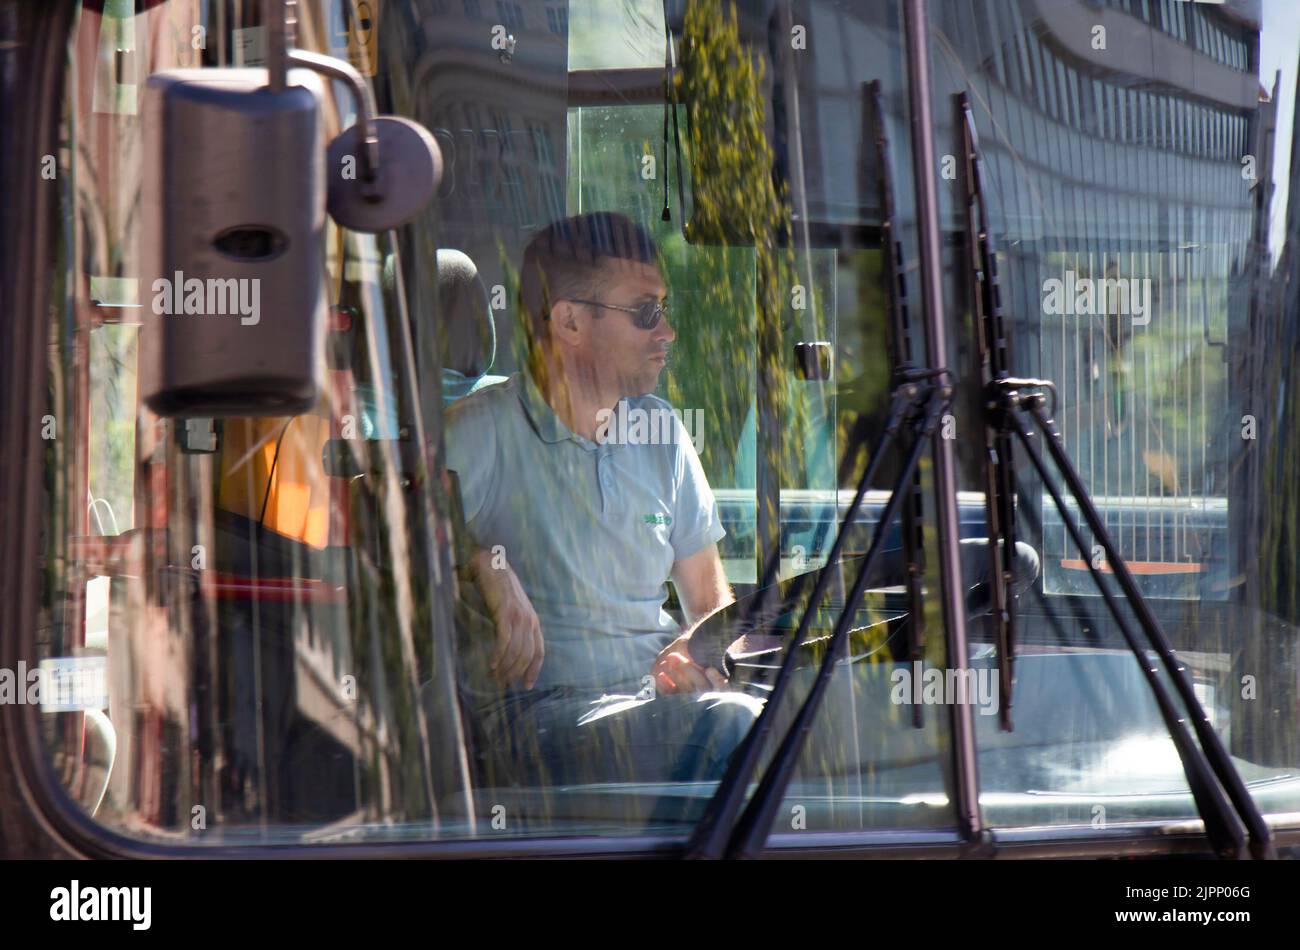 Belgrado-Serbia - 15 giugno 2022: Conducente che guida un autobus urbano, dall'esterno attraverso il parabrezza anteriore con riflessi sul vetro Foto Stock